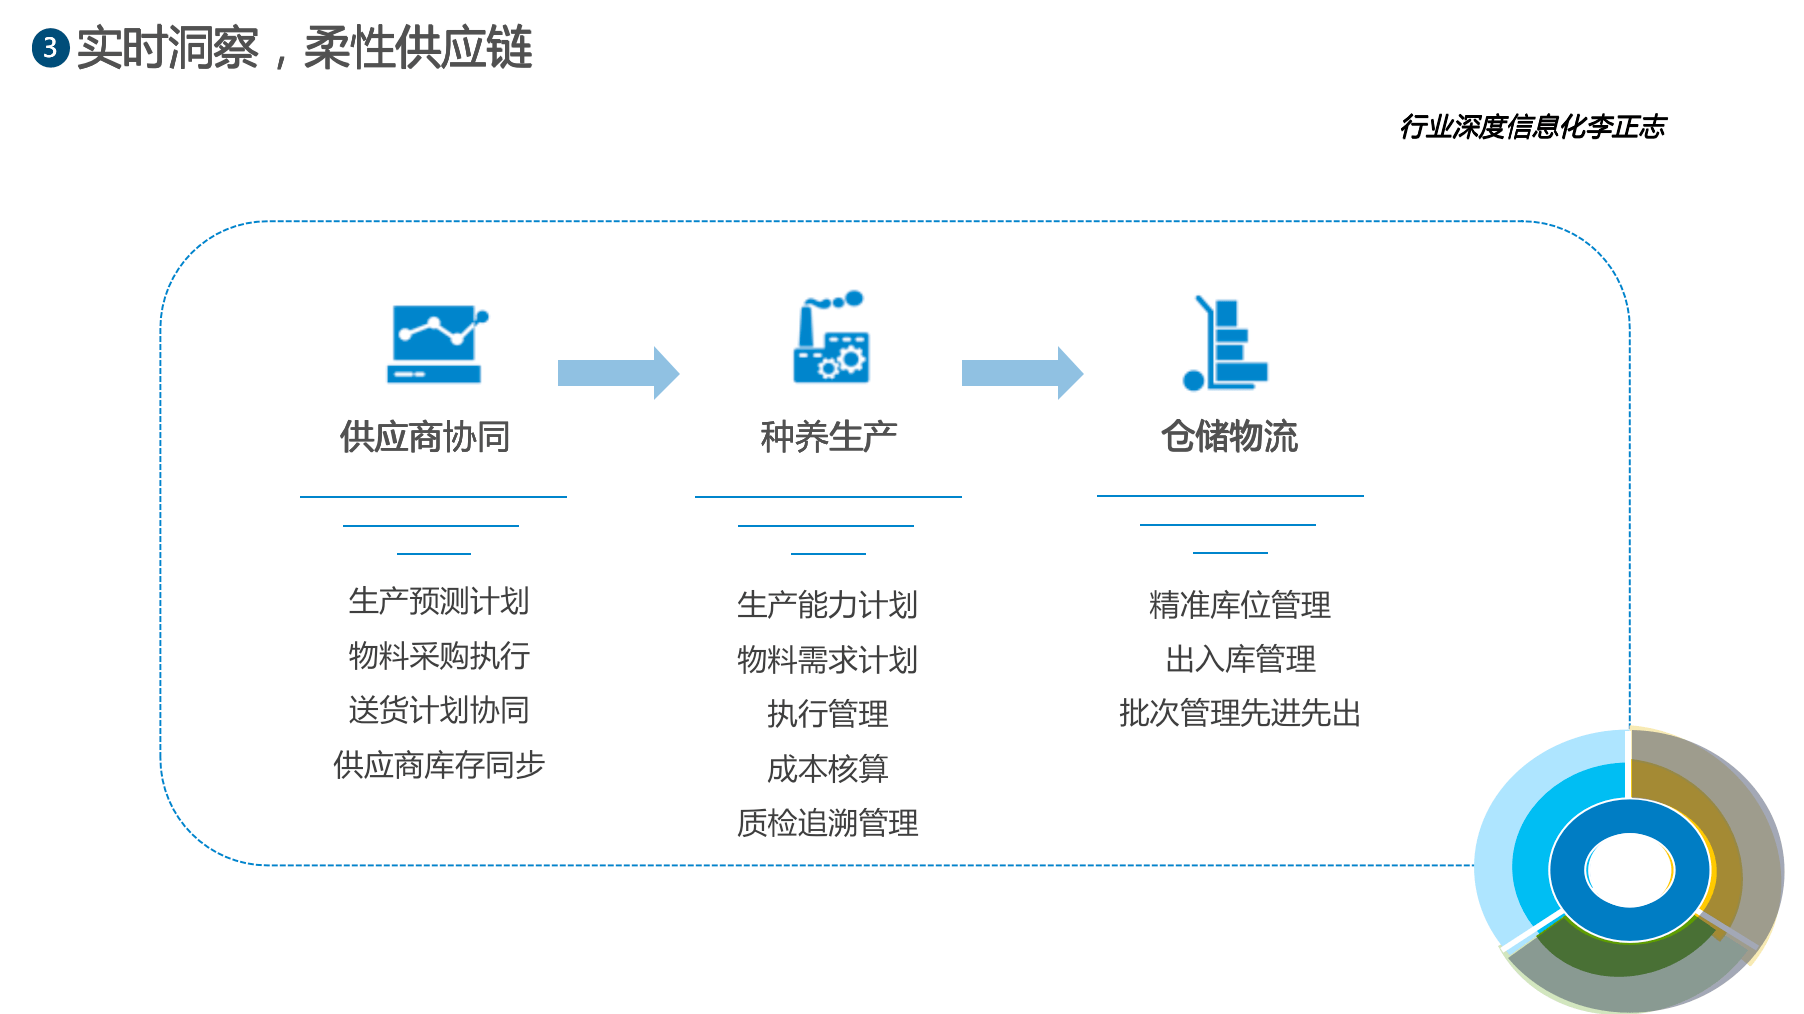 宝运莱官网华夏农牧行业讯息化结构-天主视角数字化运营(图6)